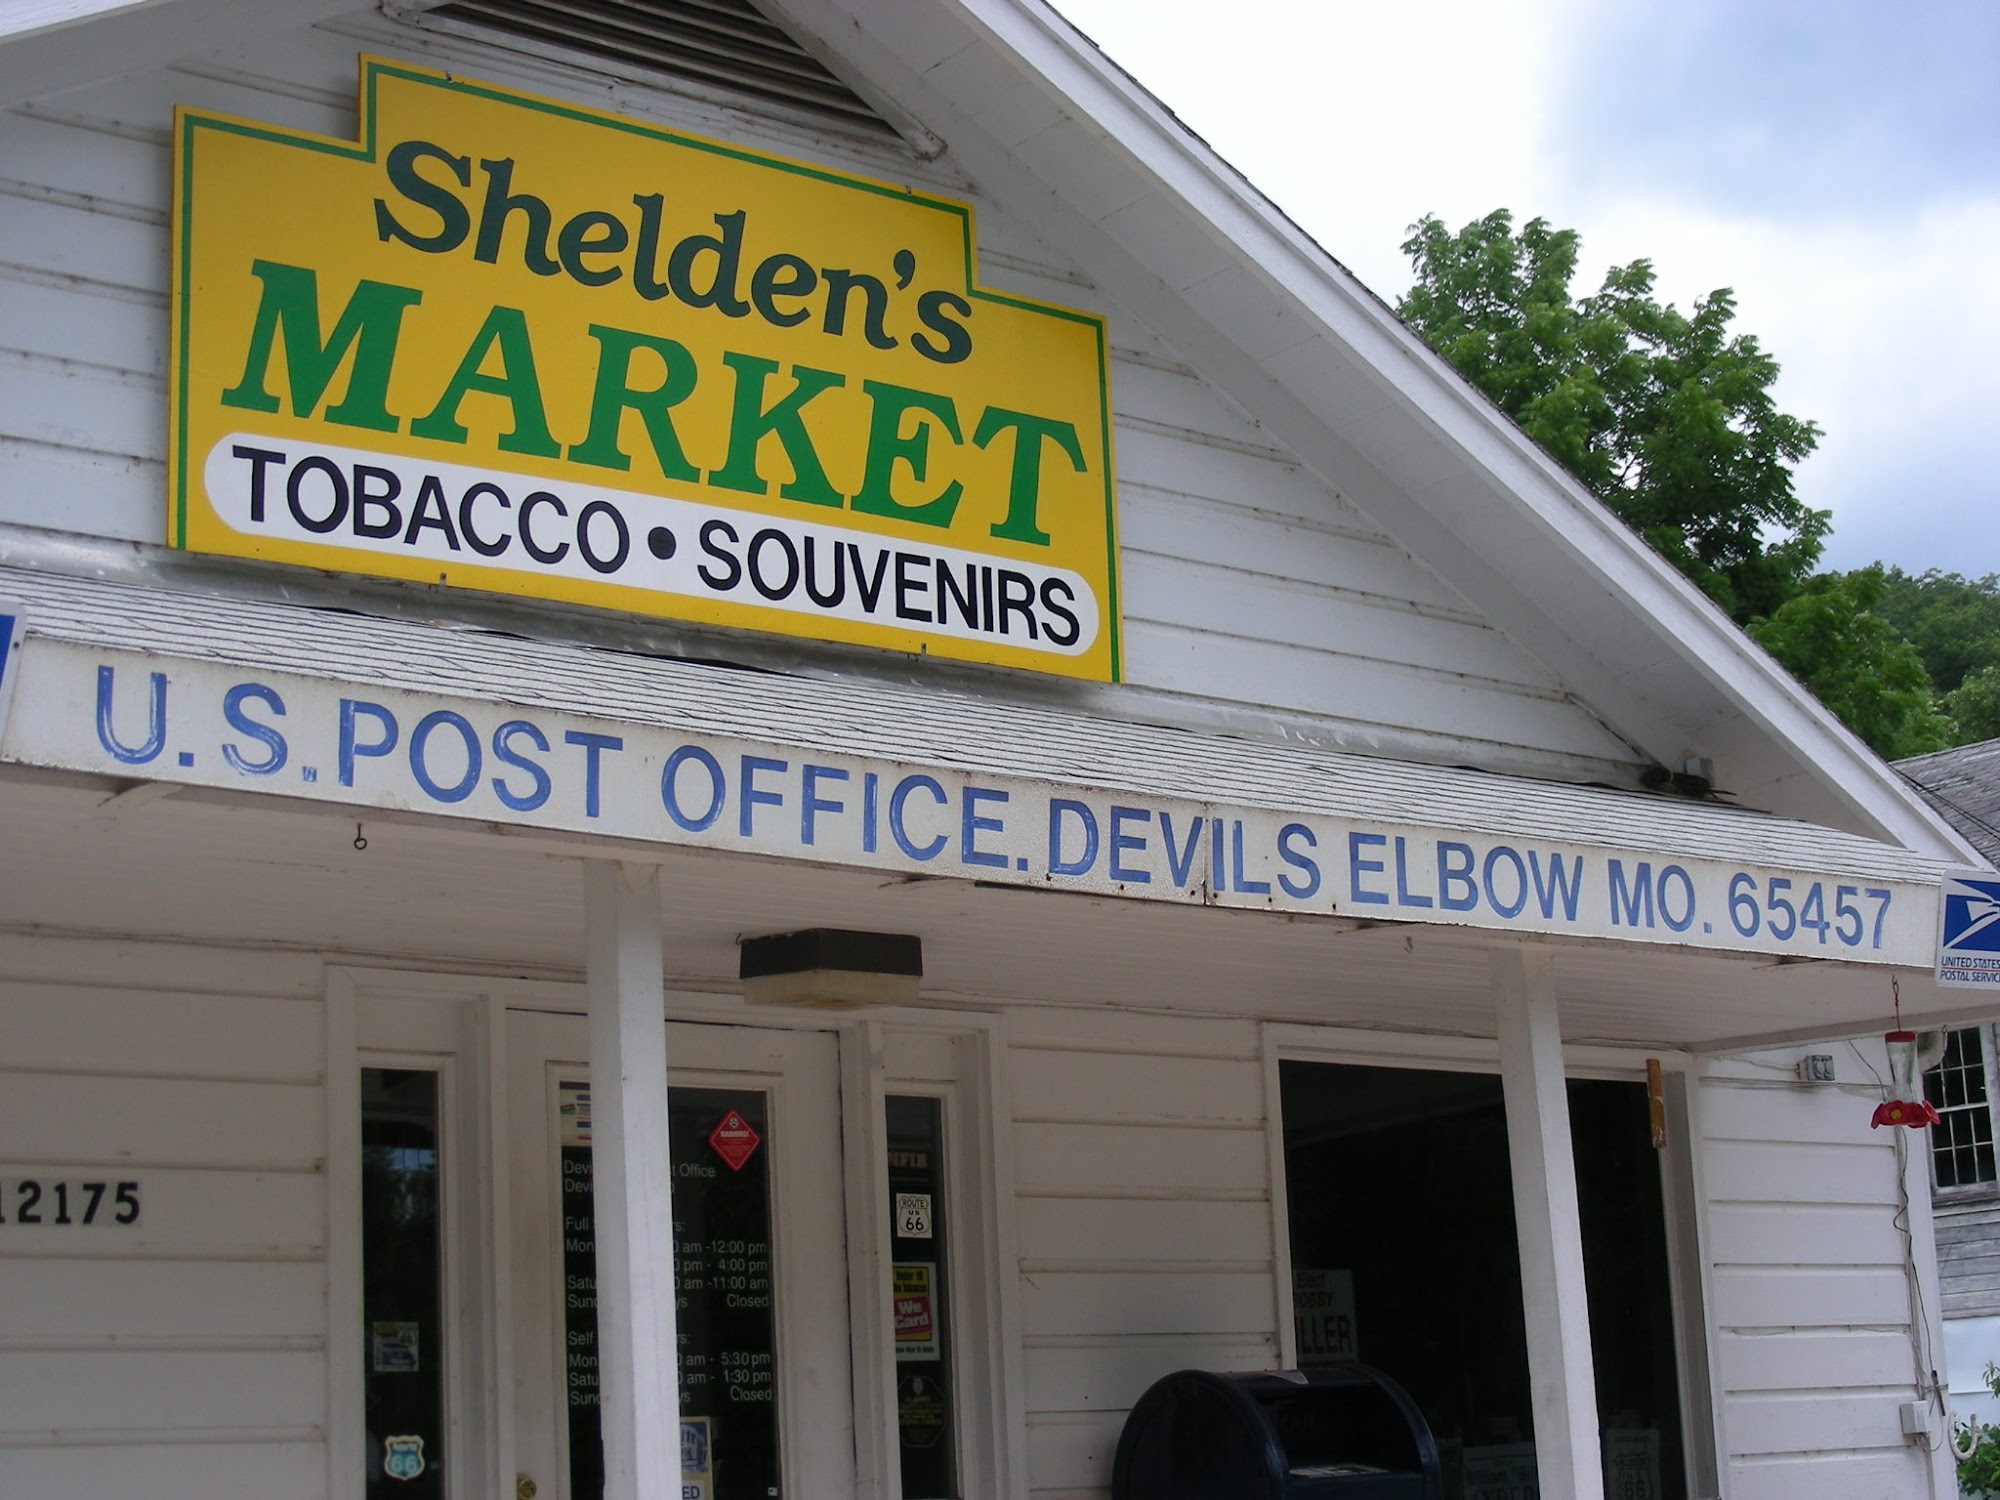 Shelden's Market